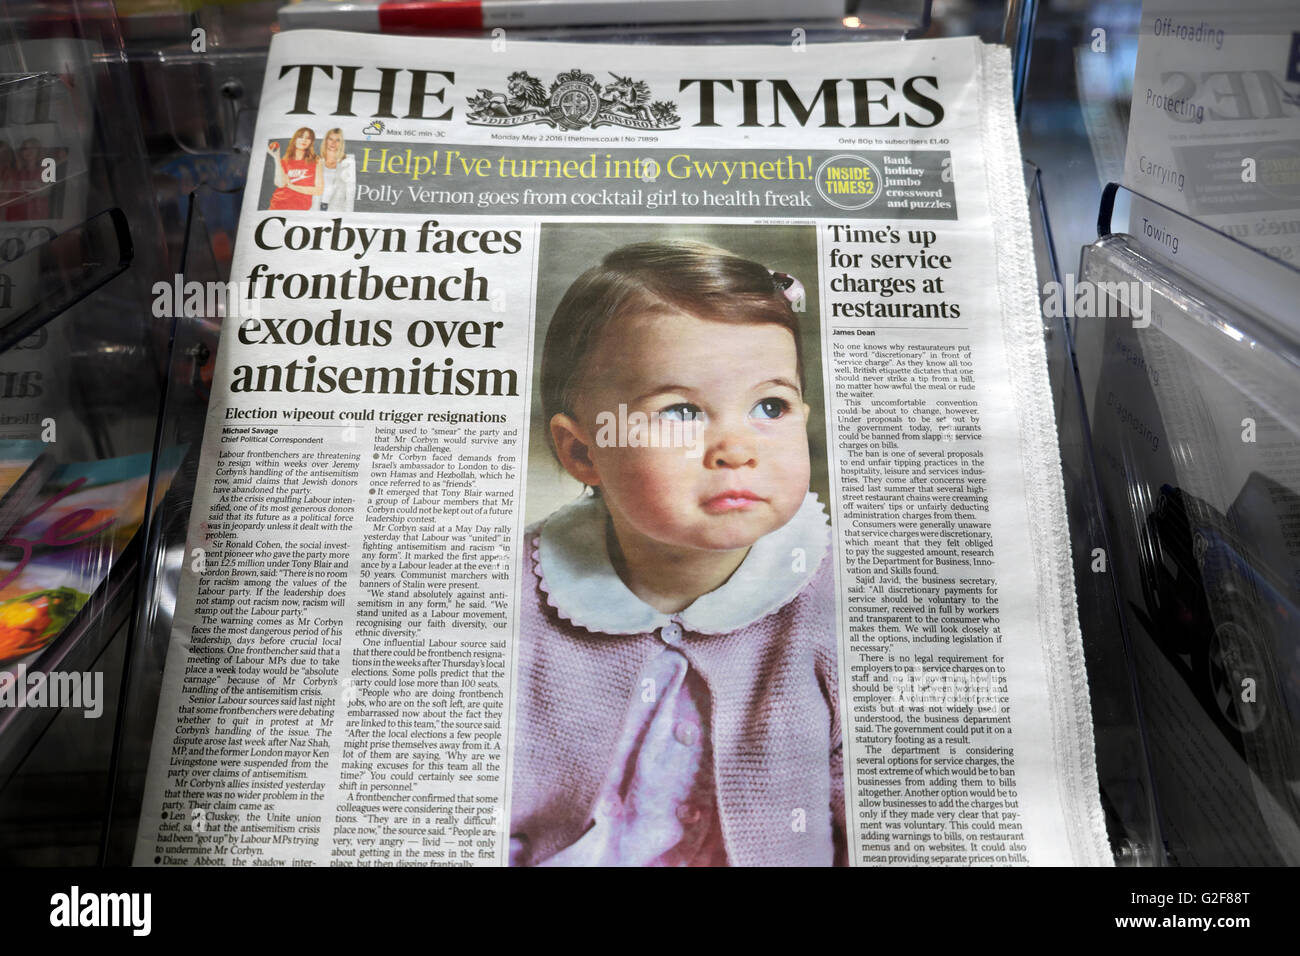 Princesse Charlotte sur sa première photo d'anniversaire prise par elle Mère sur la première page du journal Times dans un Supermarché à Londres Angleterre Royaume-Uni Banque D'Images